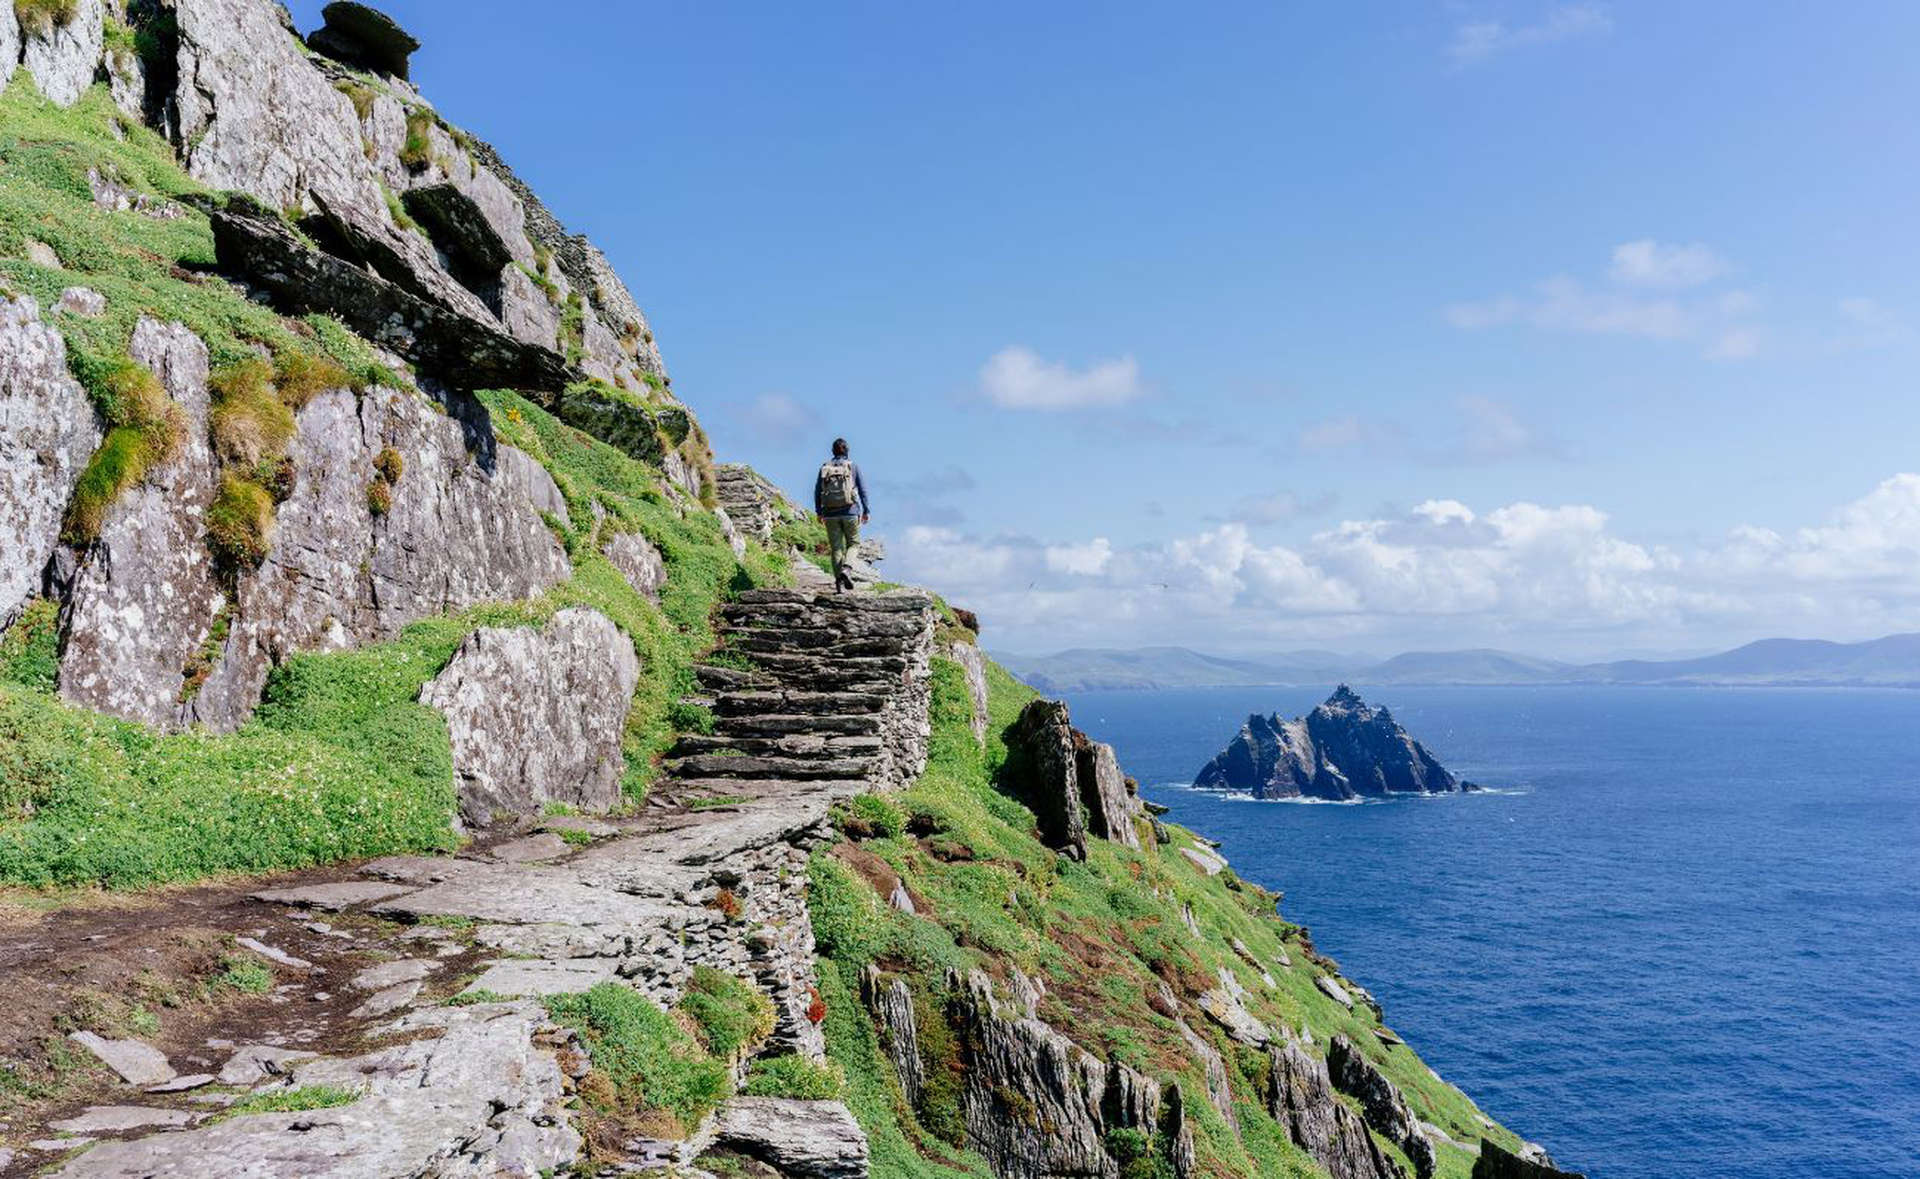 جزيرة سكيليغ مايكل، أحد مواقع التراث لليونسكو، قبالة سواحل أيرلندا